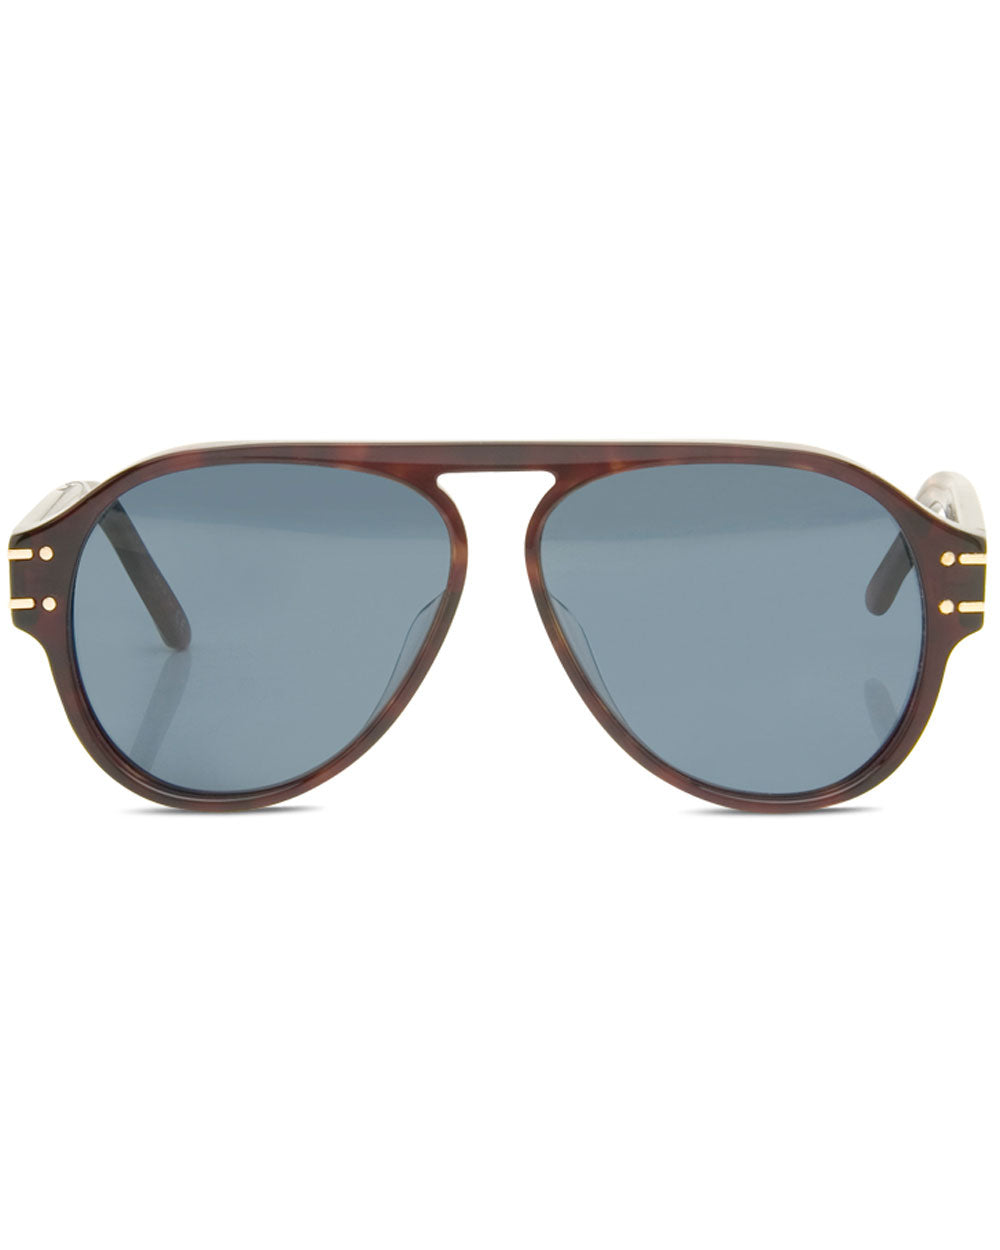 DIOR CD Diamond S5I 56 Brown & Tortoise Sunglasses | Sunglass Hut USA